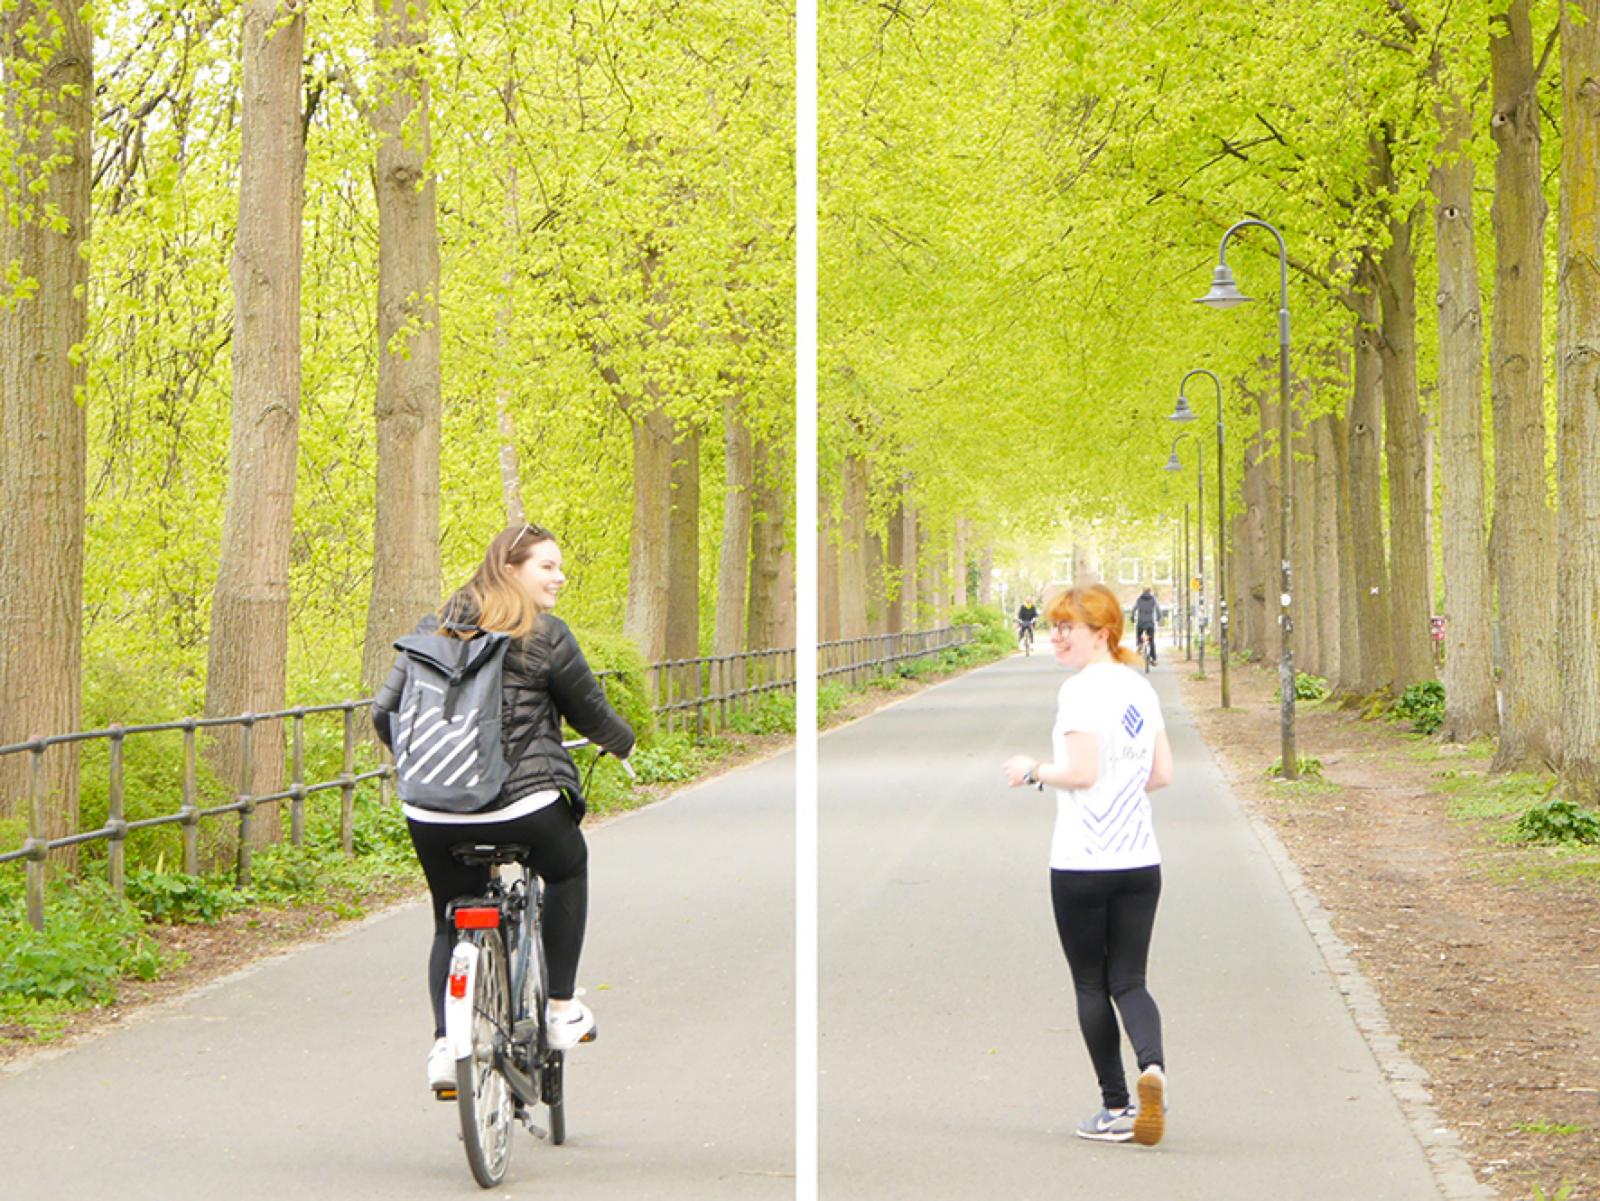 Vom 15. Mai bis zum 15. September zählt jeder auf dem Fahrrad oder zu Fuß zurückgelegte Kilometer für den Wettbewerb – egal ob dienstlich oder in der Freizeit. (Foto: FH Münster/Rena Ronge)